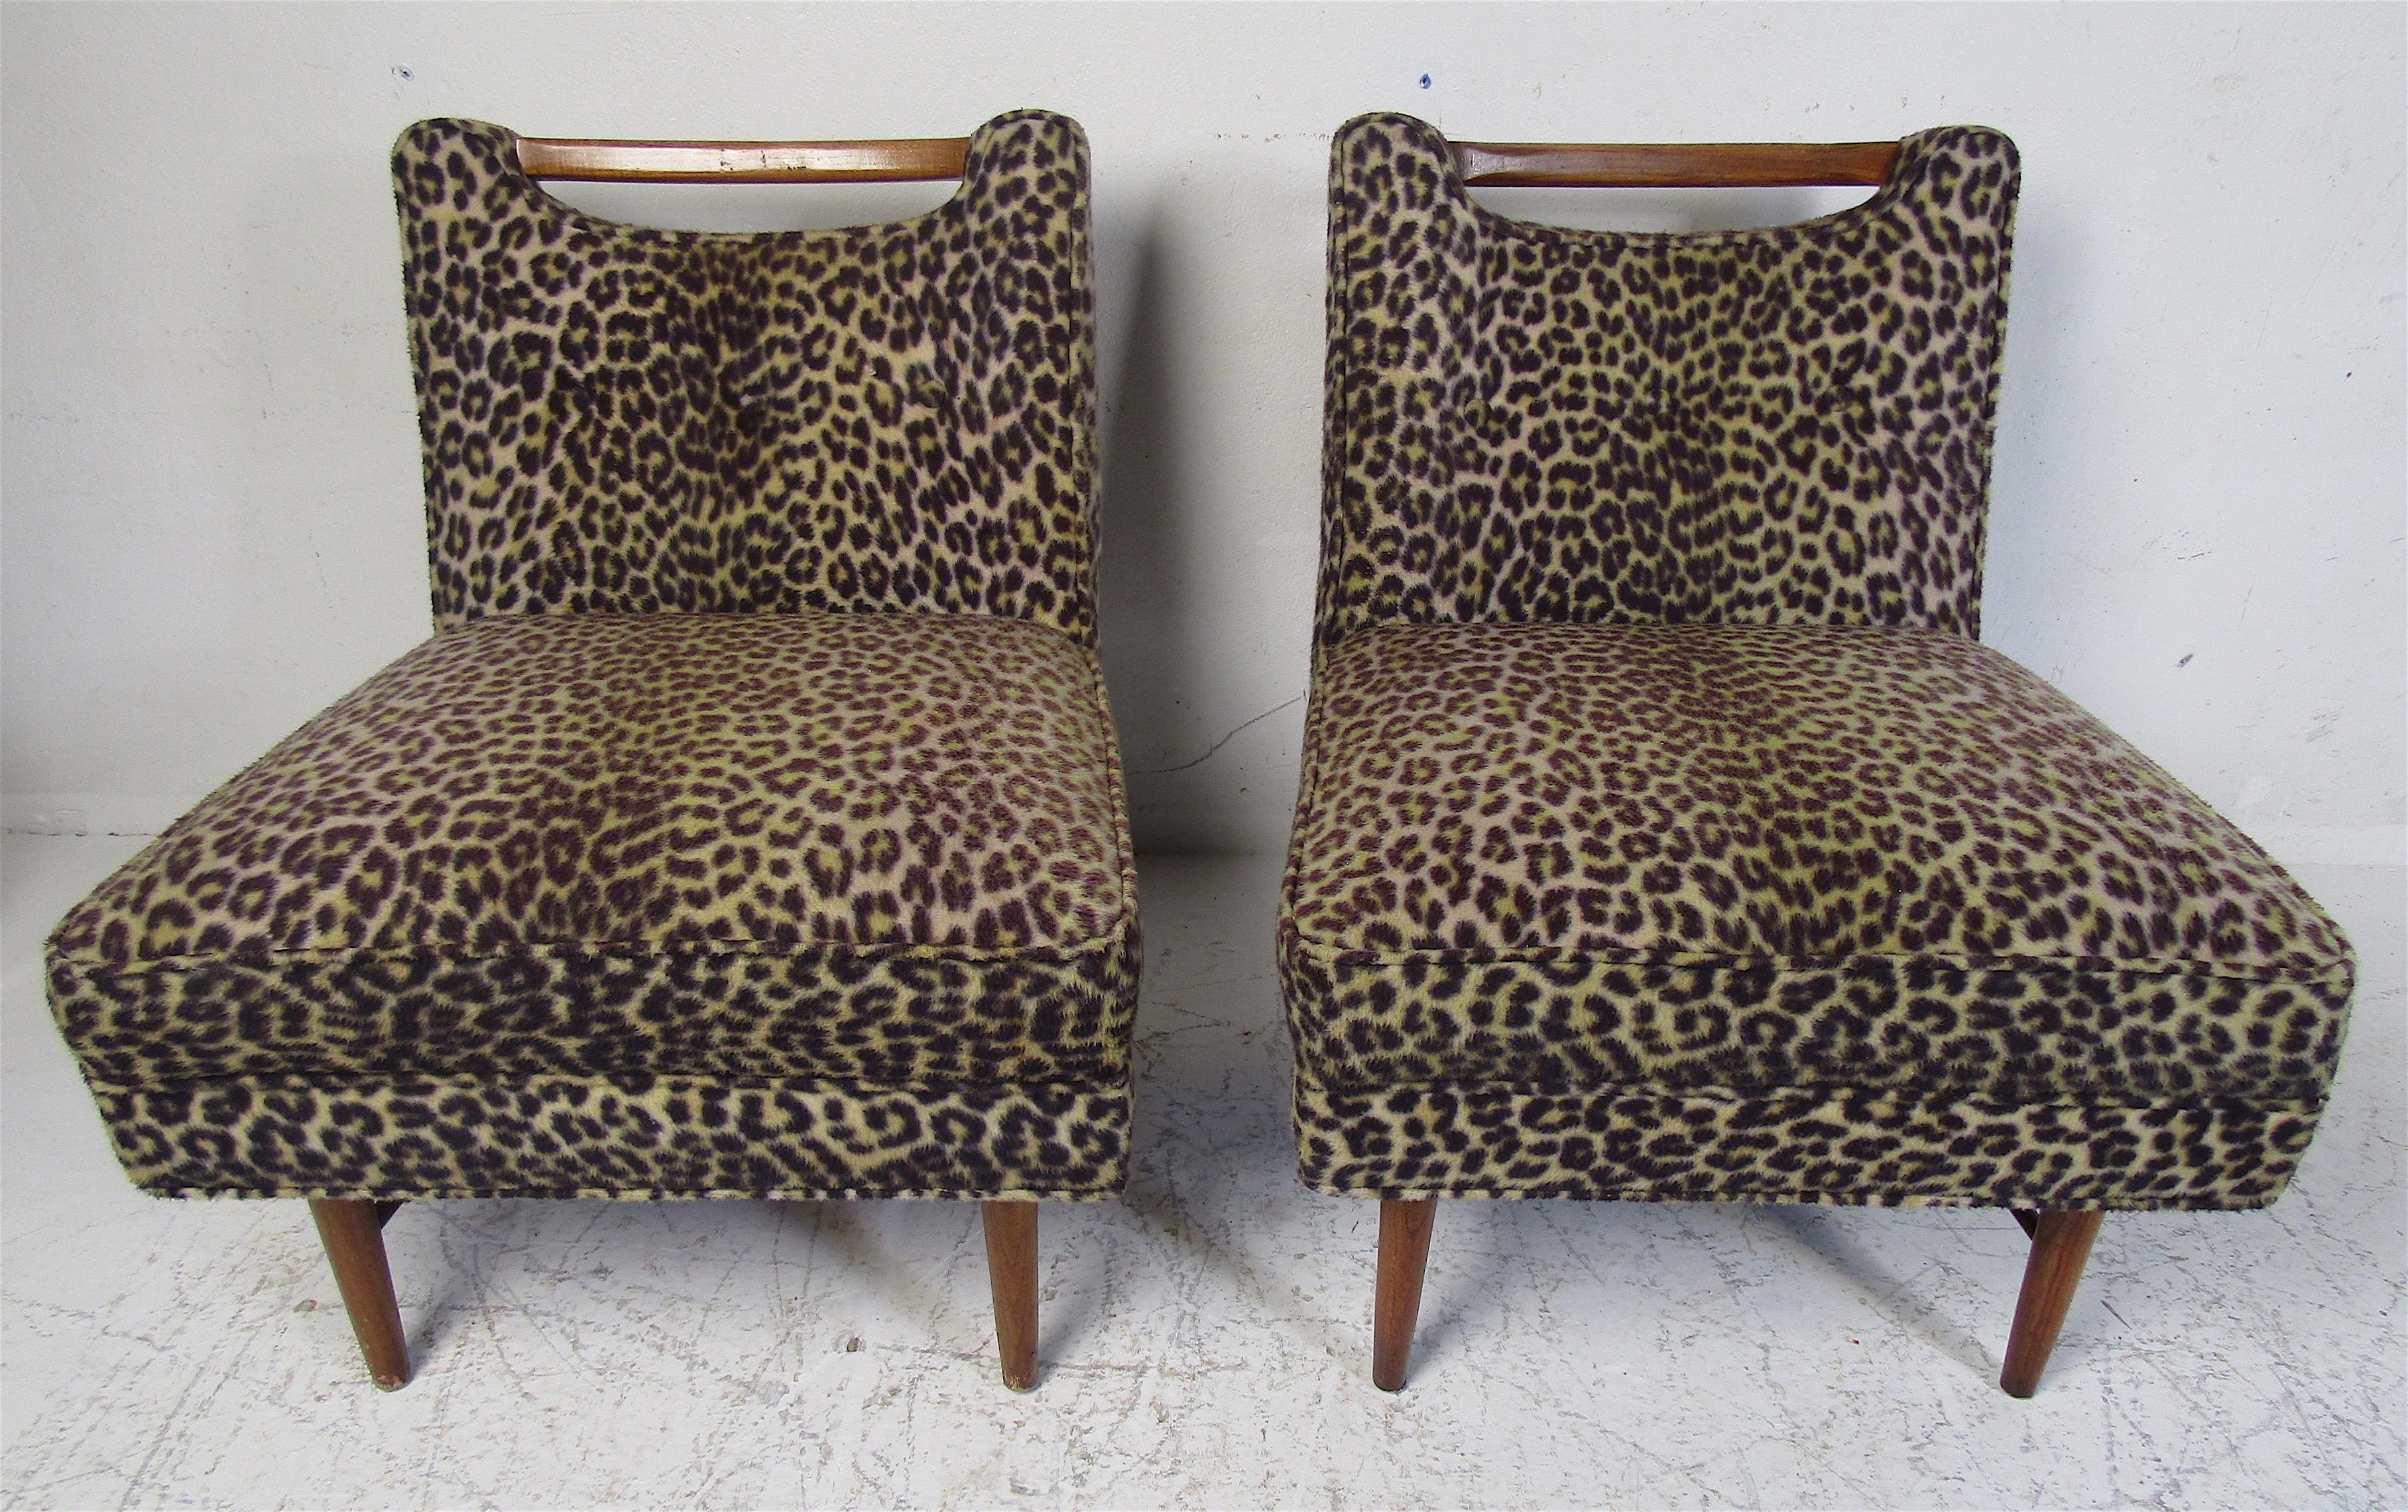 Dieses schöne Paar Vintage-Loungesessel ist mit einem plüschigen Leopardenmuster gepolstert und hat Beine aus Walnussholz. Eine einzigartig gestaltete Rückenlehne mit einer Holzplatte, unter der sich eine Aussparung befindet. Dieses reizvolle